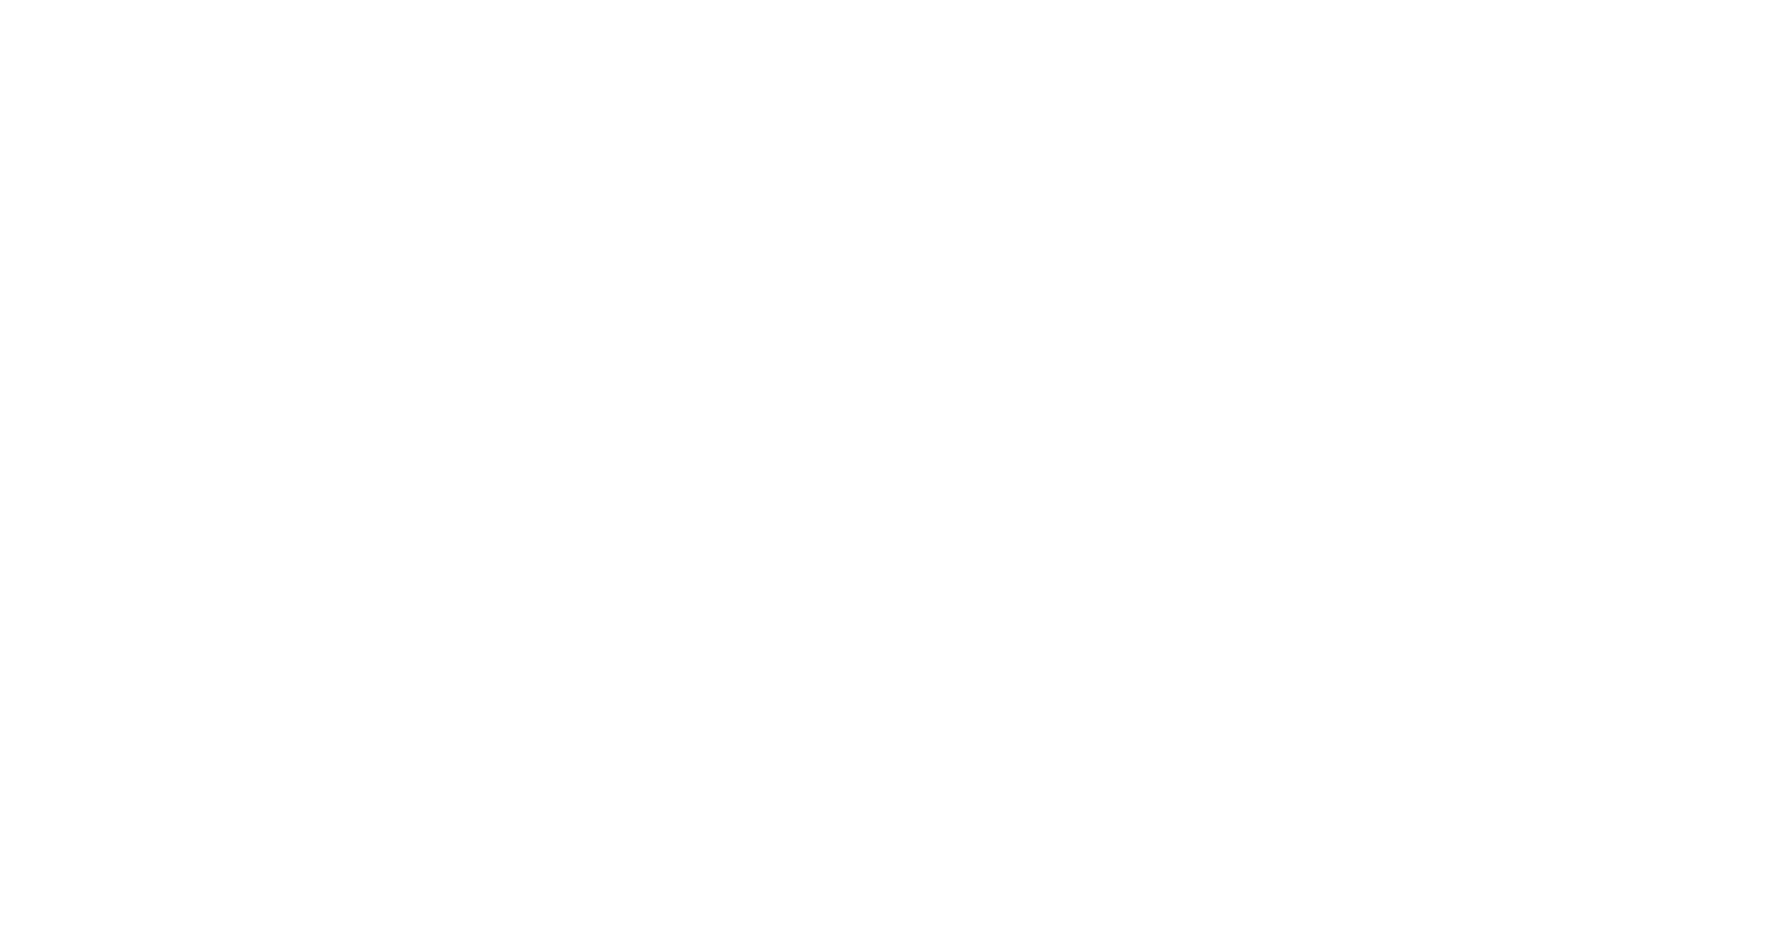 Darrow & Darrow: Body of Evidence logo